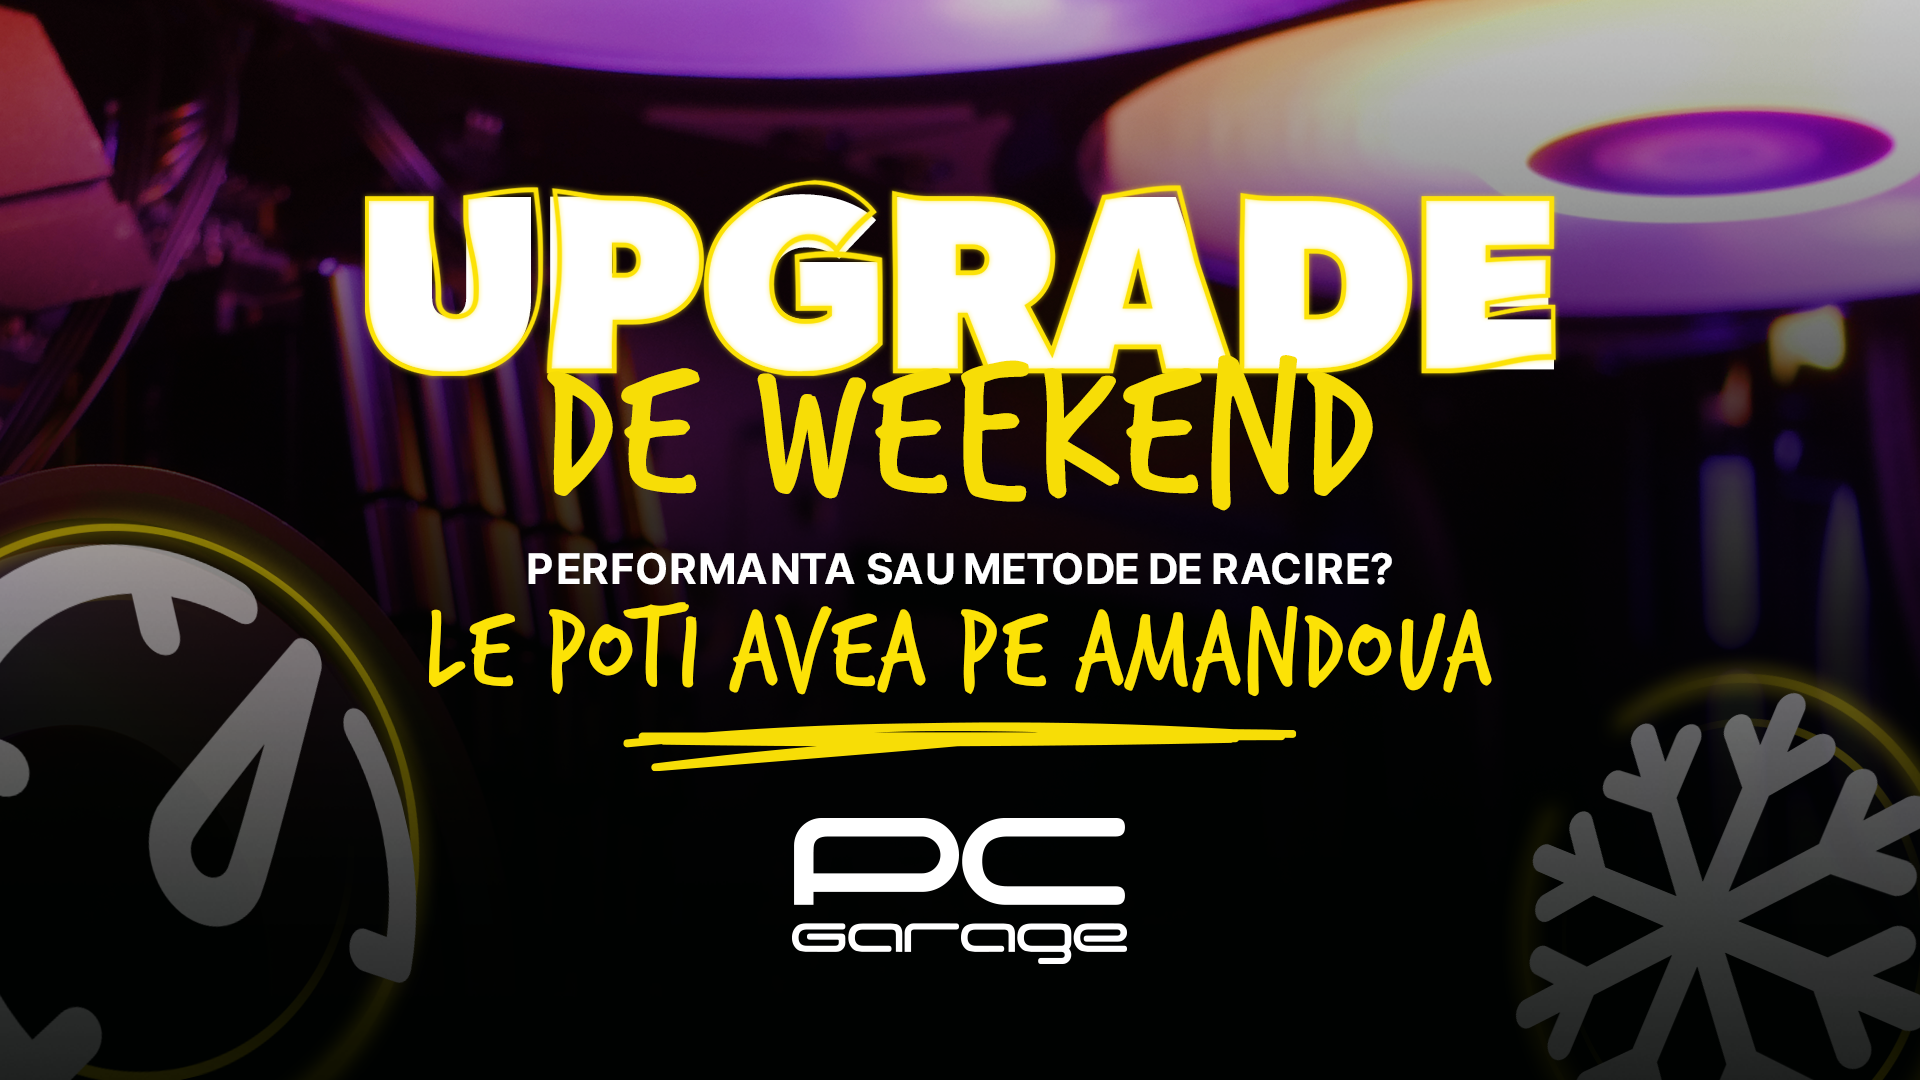 PC Garage anunță campania Upgrade de Weekend. Campania are loc între 29-31 iulie 2022